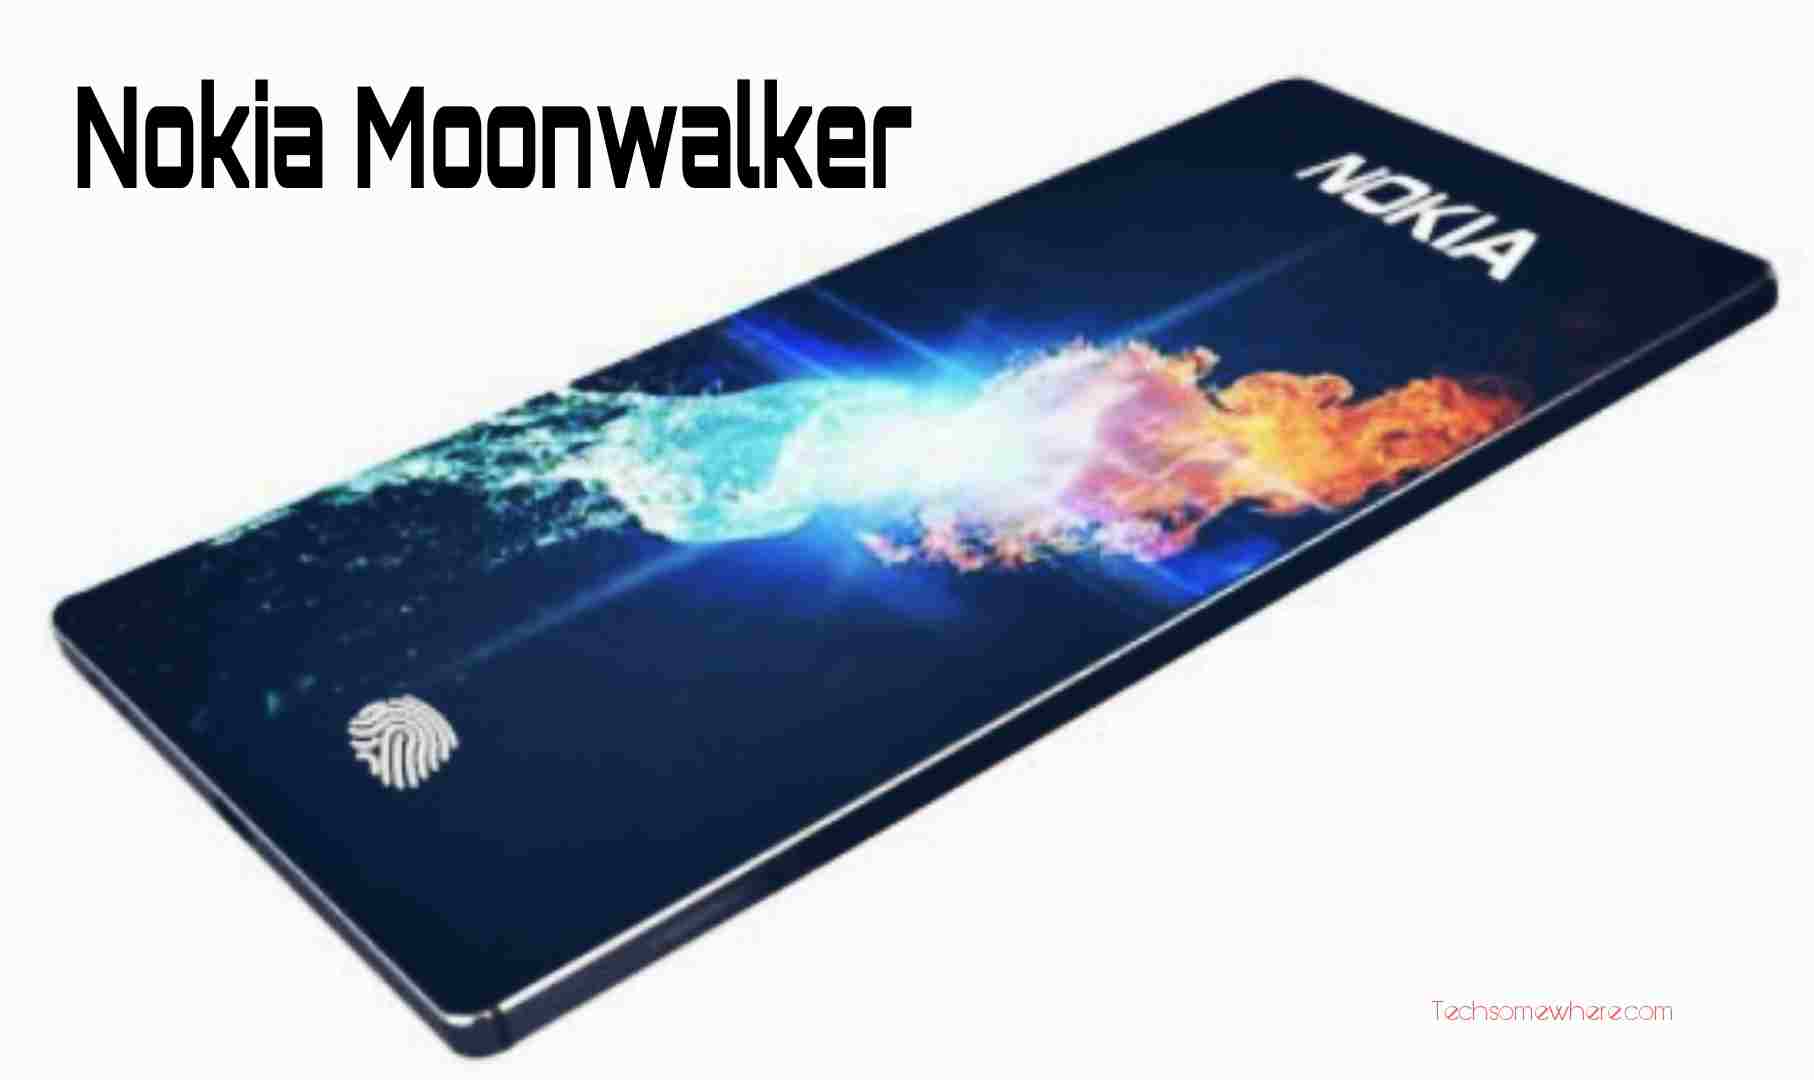 Nokia Moonwalker - Price, Specs, Rumours & Release Date 2022.